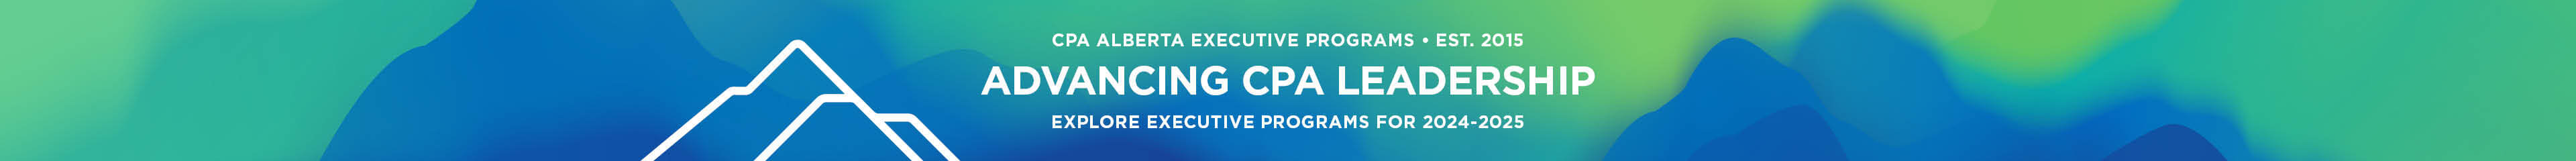 CPA Executive Programs